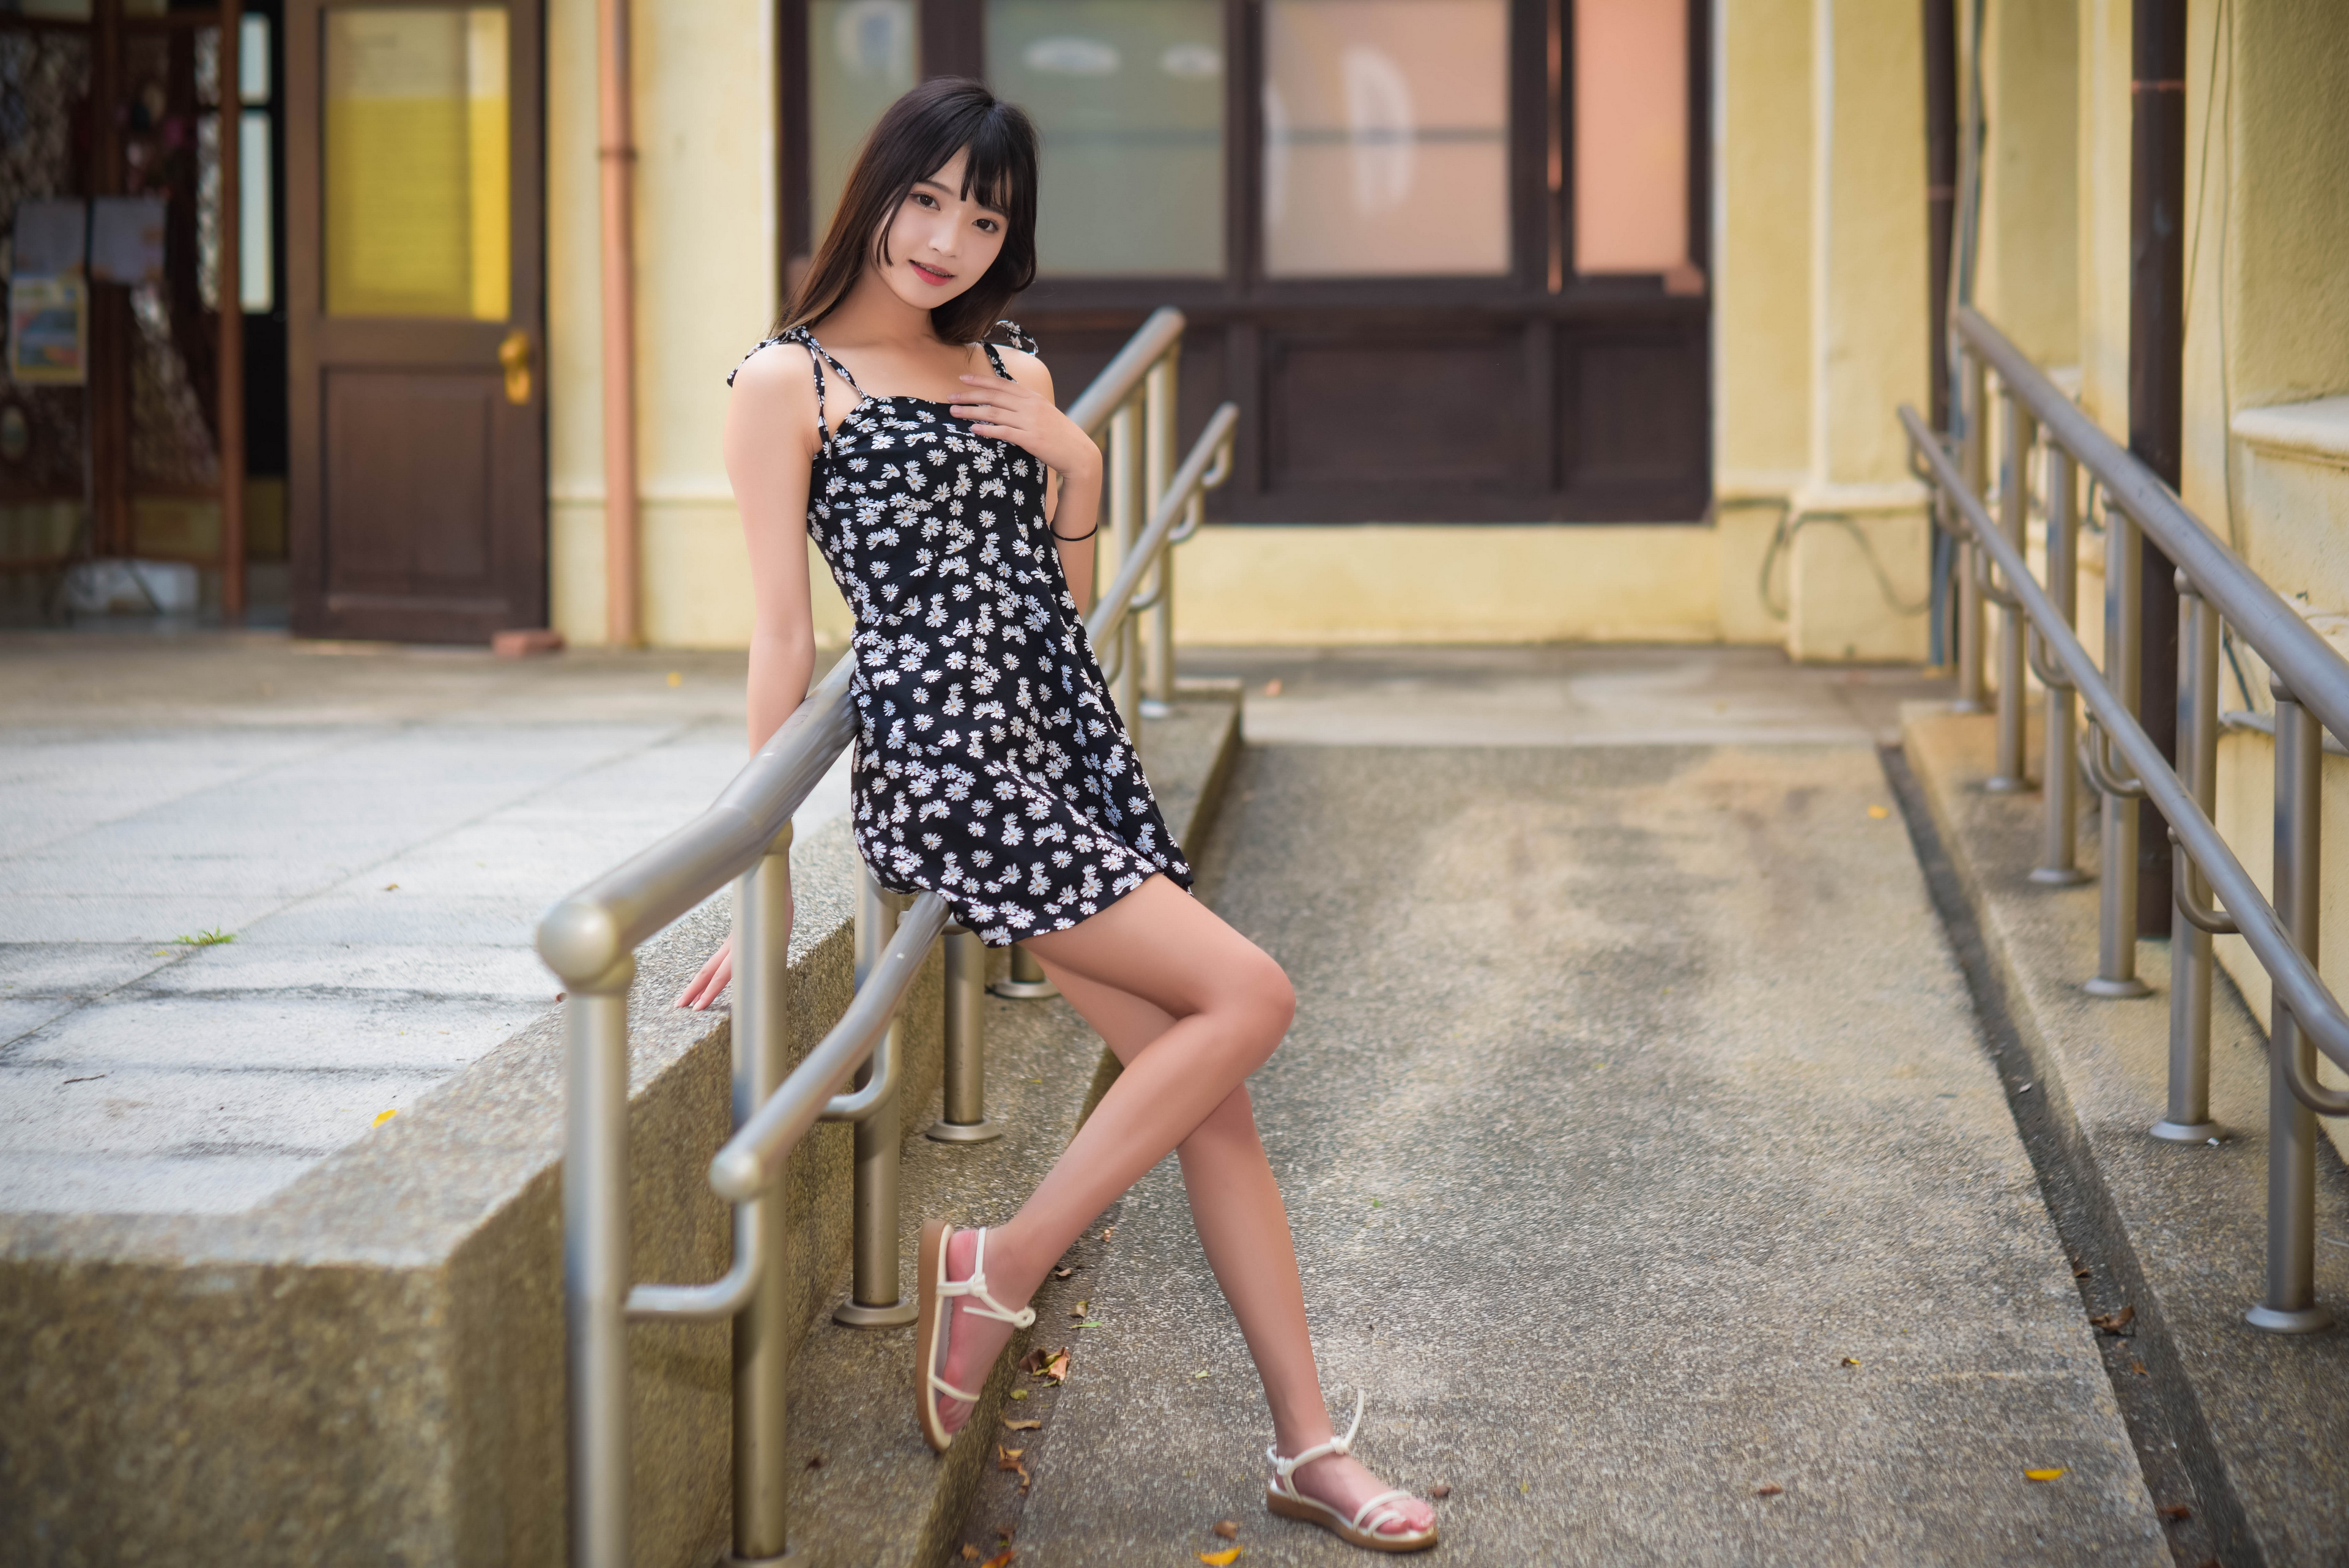 Asian Model Women Long Hair Dark Hair Flower Dress Barefoot Sandal Iron Railing Leaning 3840x2563